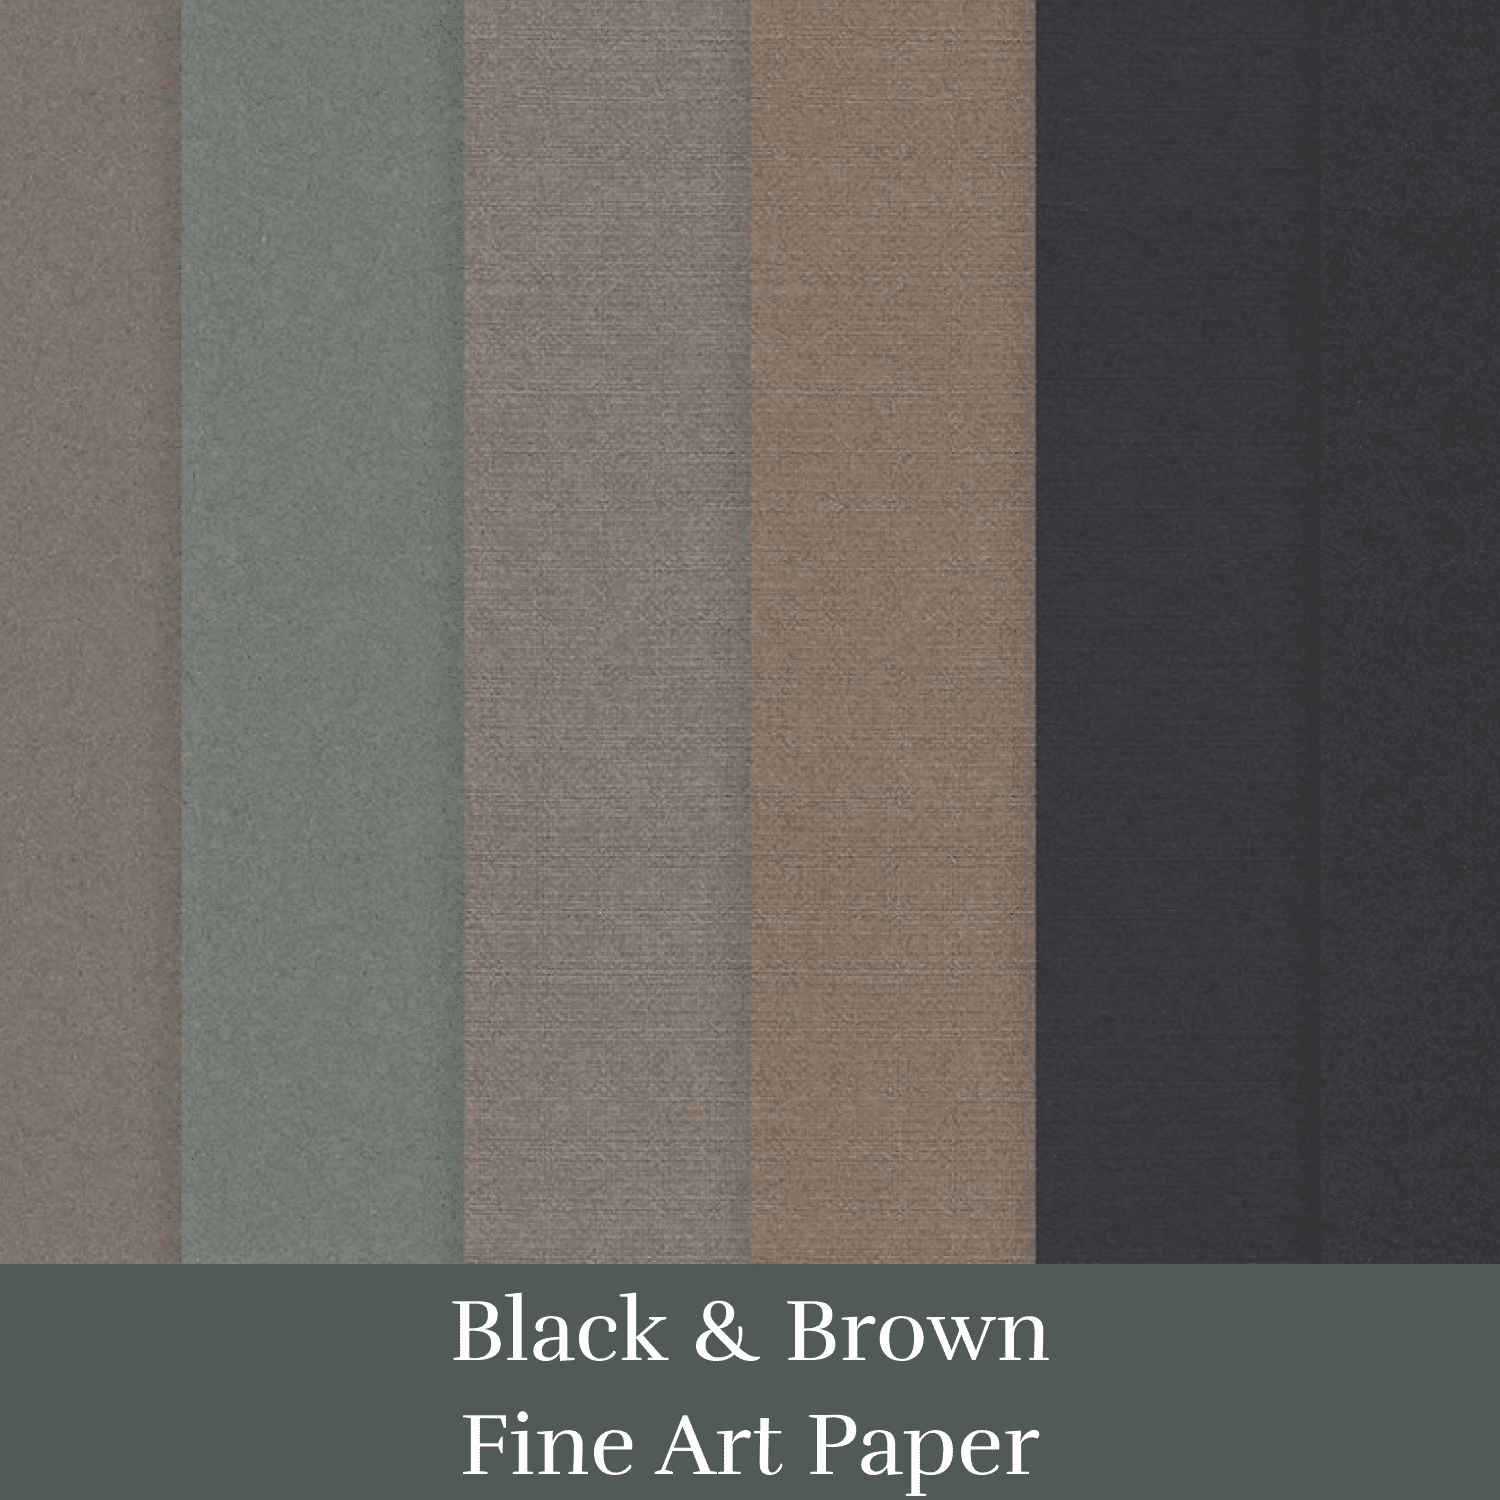 Black & Brown Fine Art Paper cover.